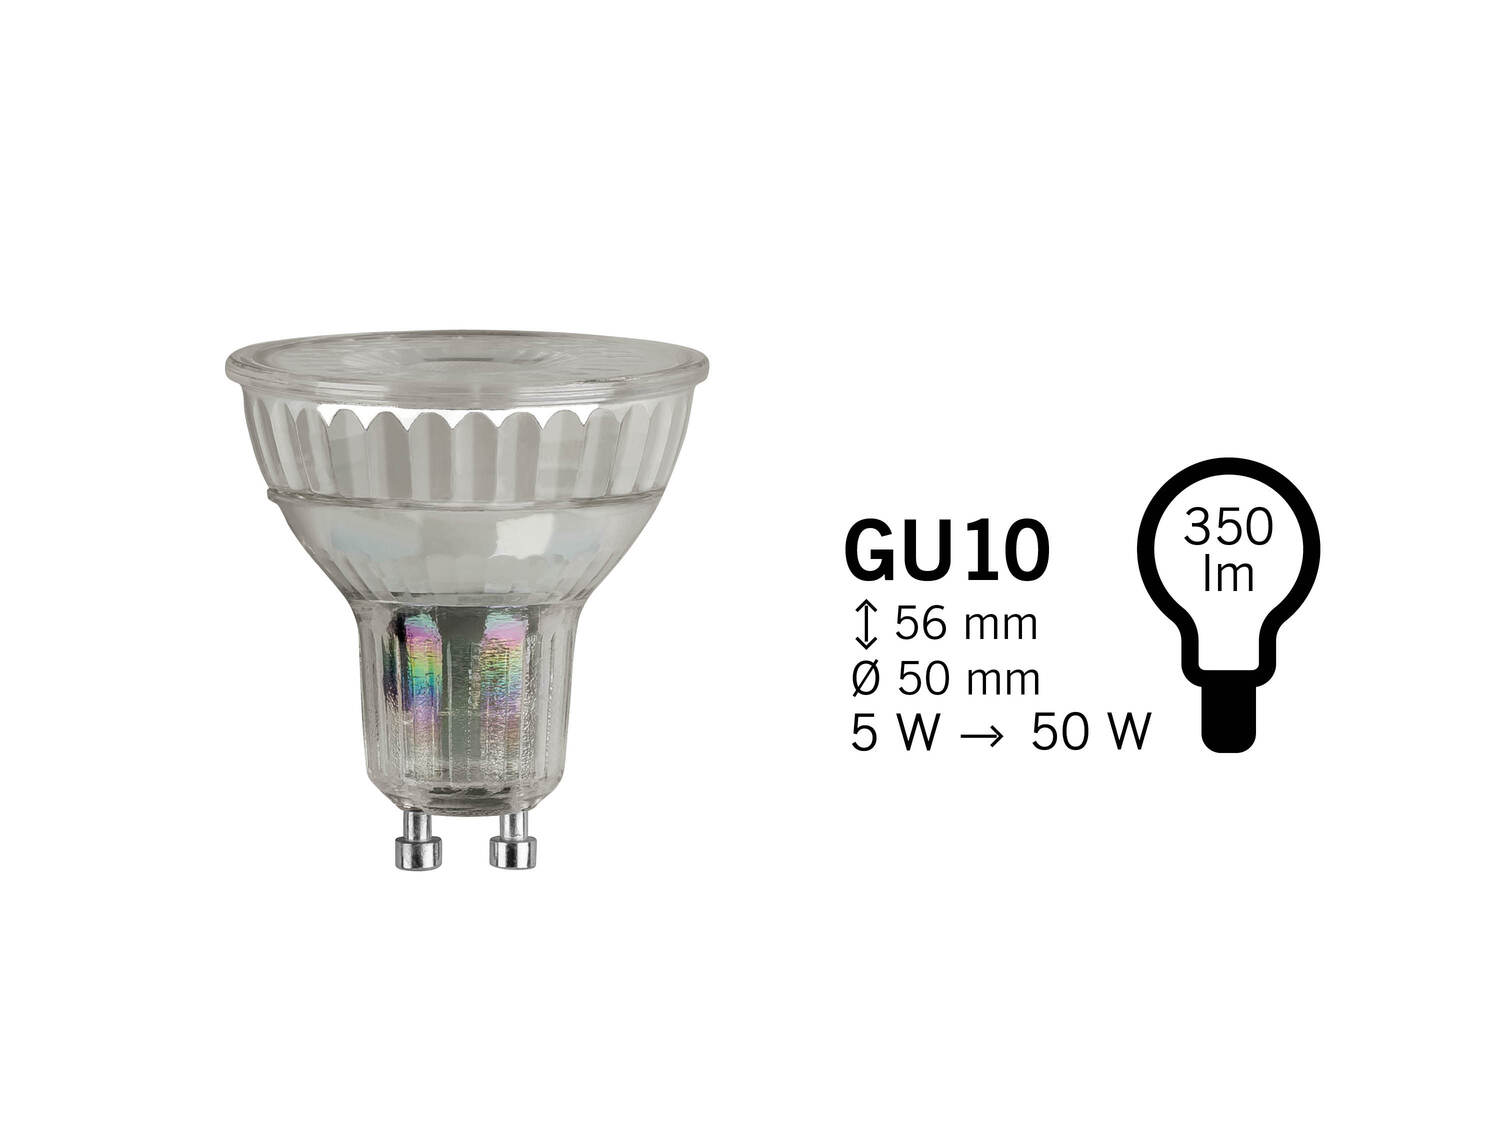 Żarówka LED Livarno, cena 7,99 PLN 
3 wzory 
- klasa energetyczna A+
Opis

- ...